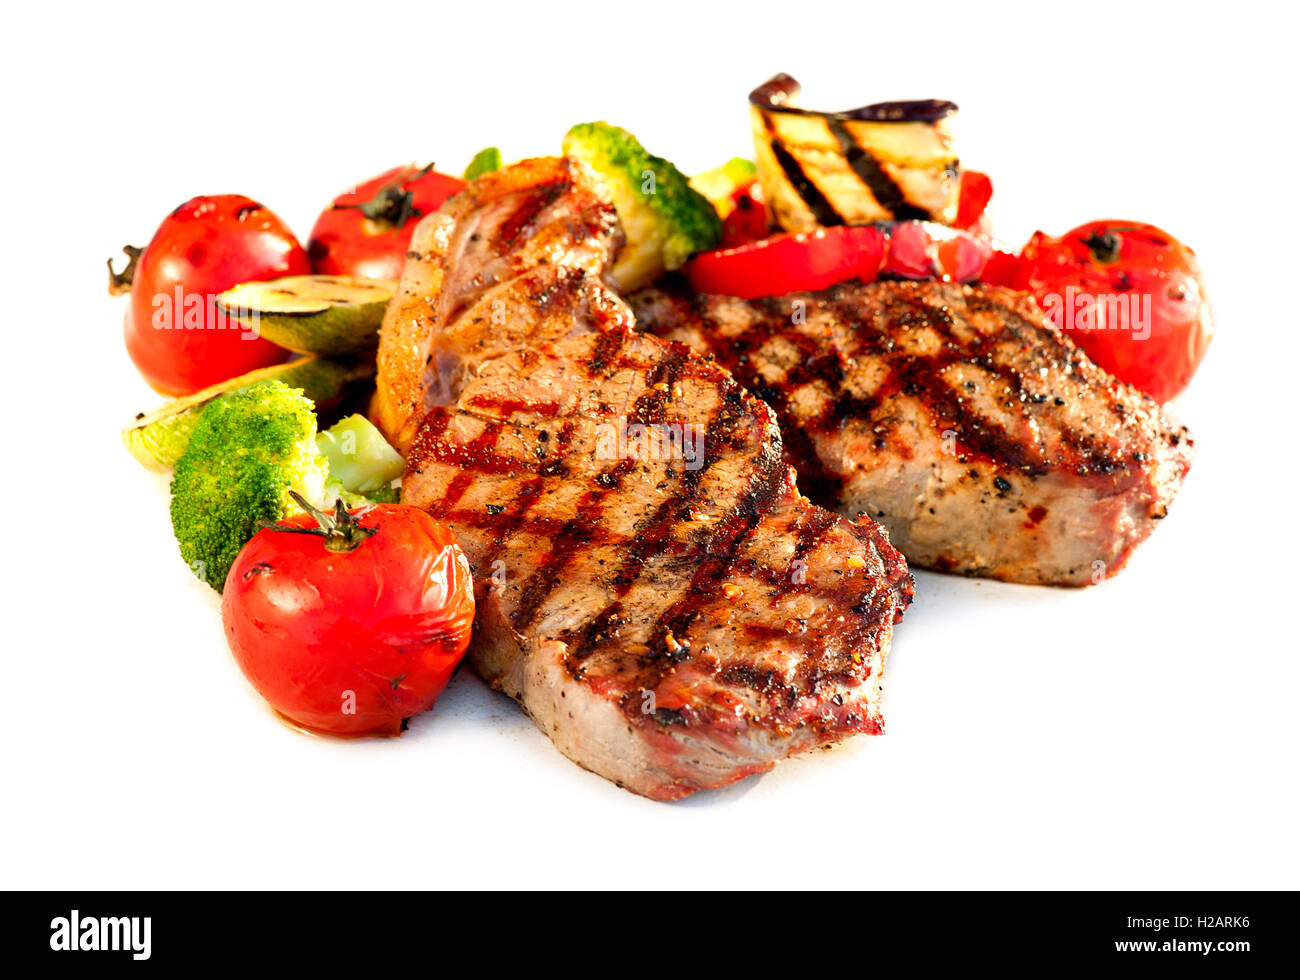 Gegrilltes Rindersteak mit Gemüse over White Background Stockfoto